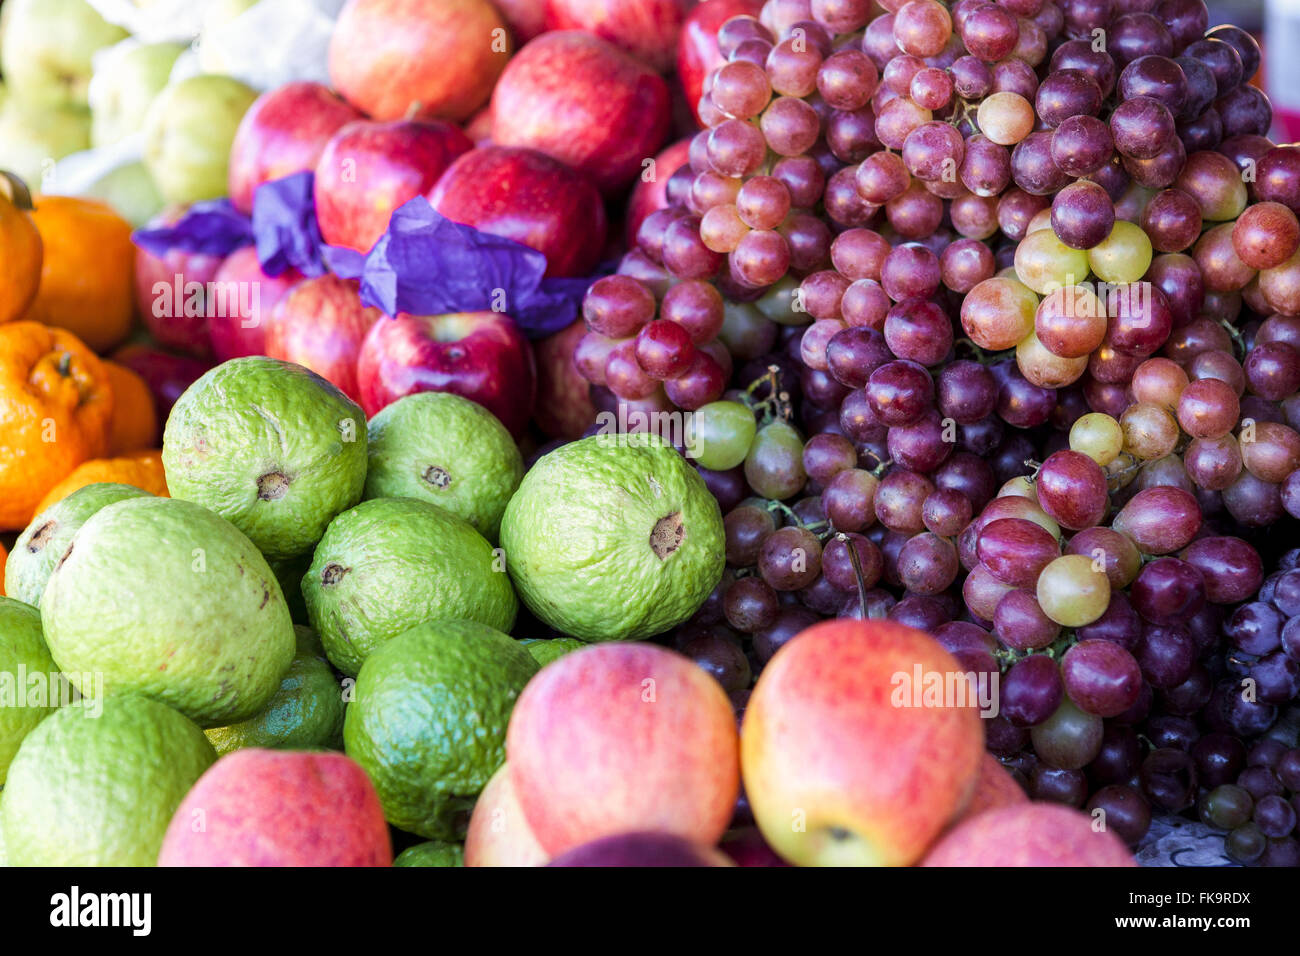 Detail der Open-Air-Frucht - Guave, Traube und Einstreu Stockfoto